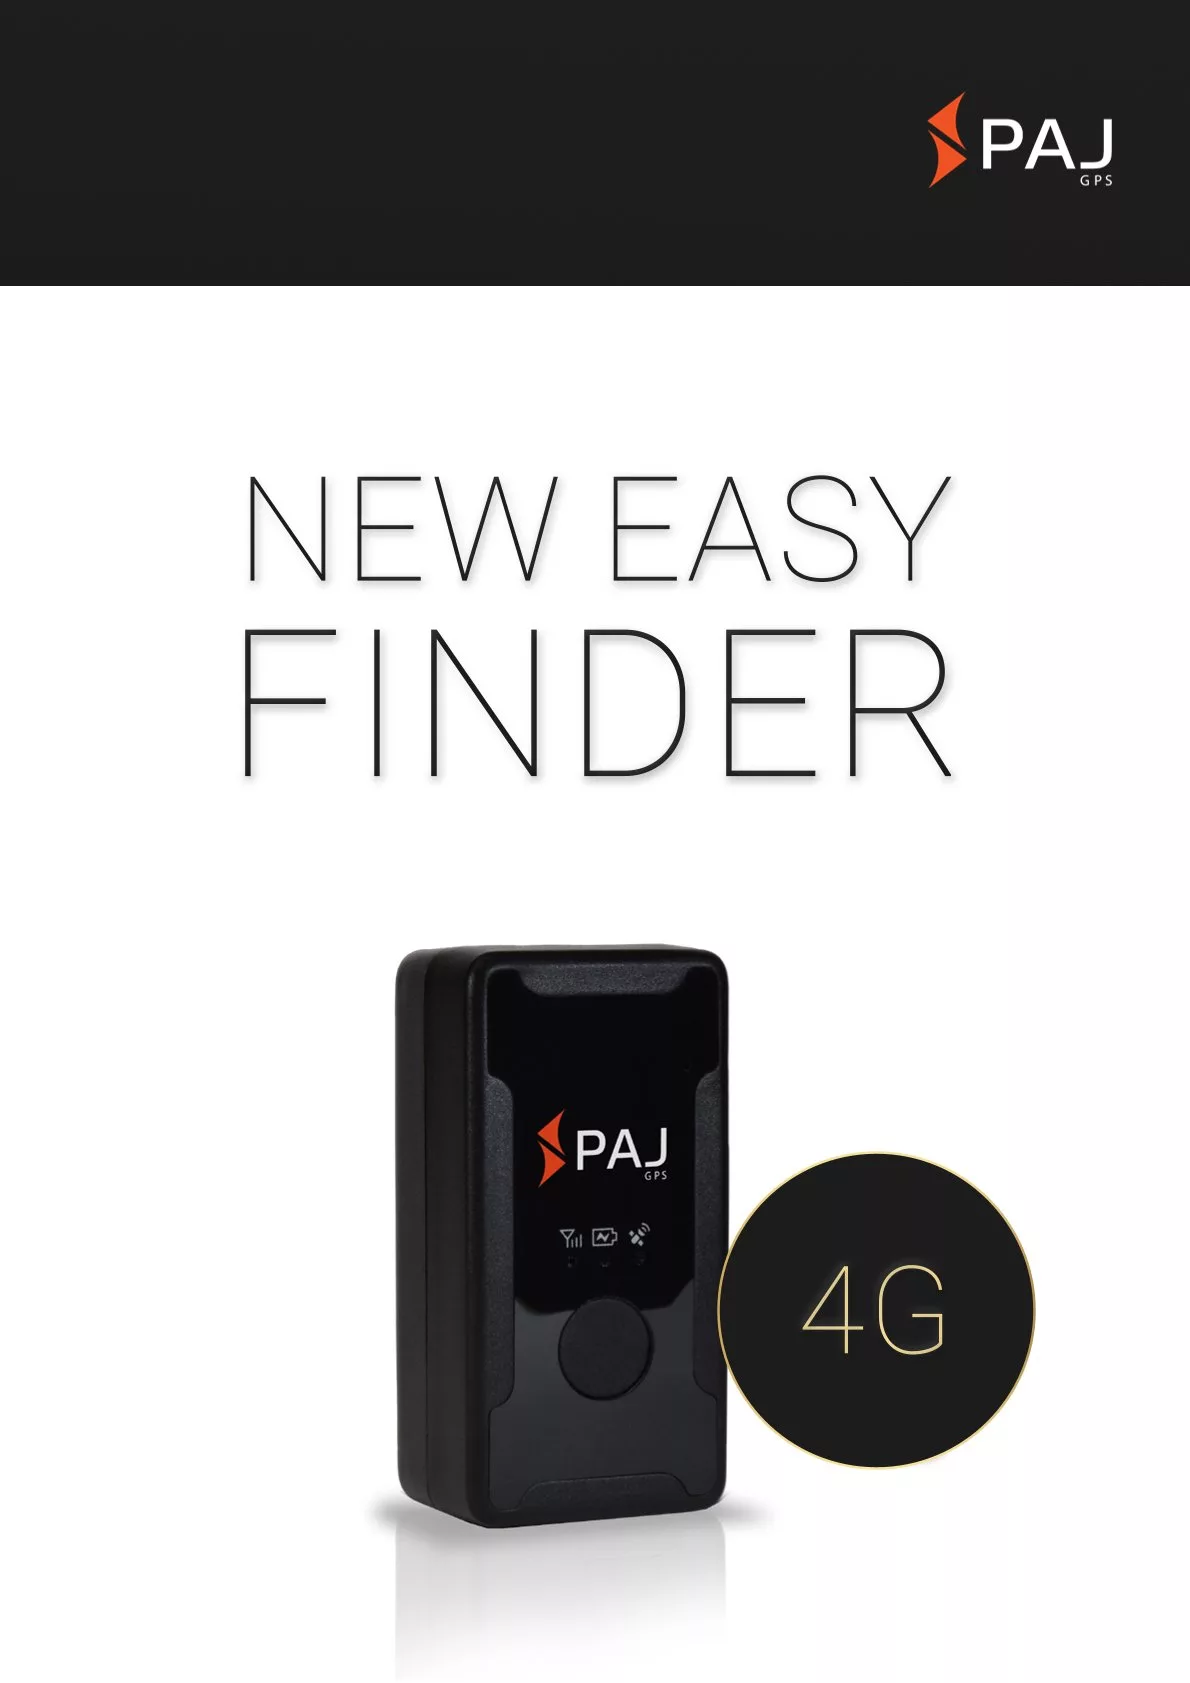 Immagine di copertina per scheda tecnica EASY Finder 4G